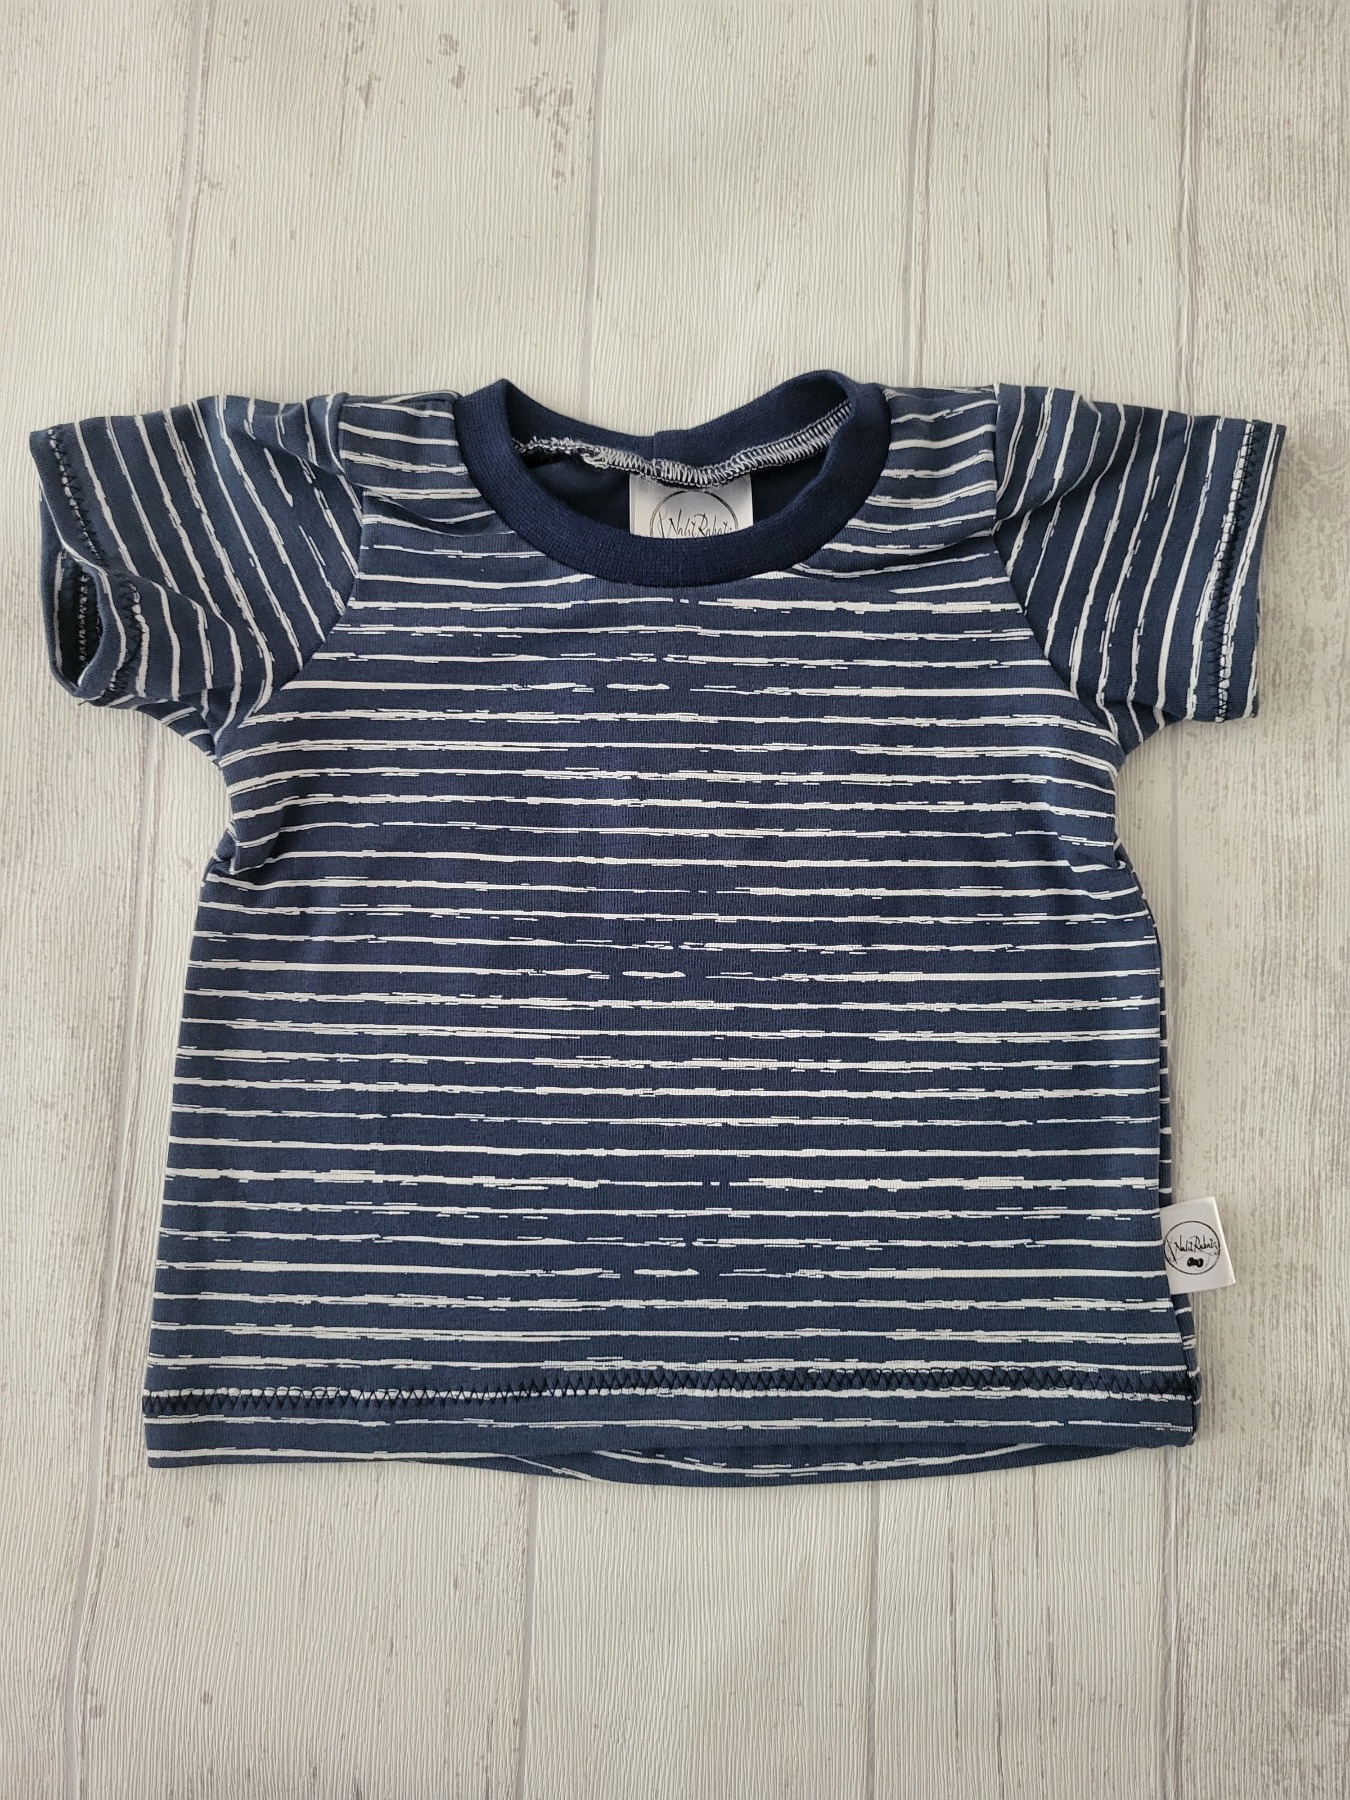 Sofortkauf Handmade T-Shirt kurzarm Streifen blau Gr. 62 von NahtRabatz